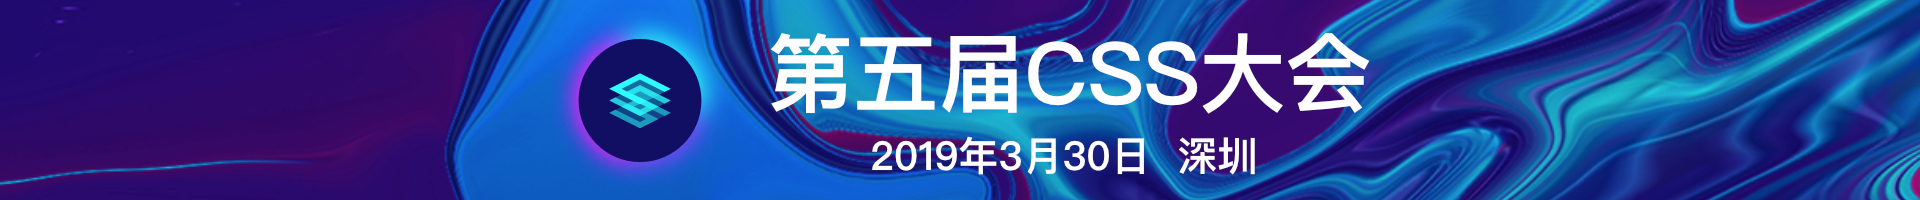 中国第五届CSS大会